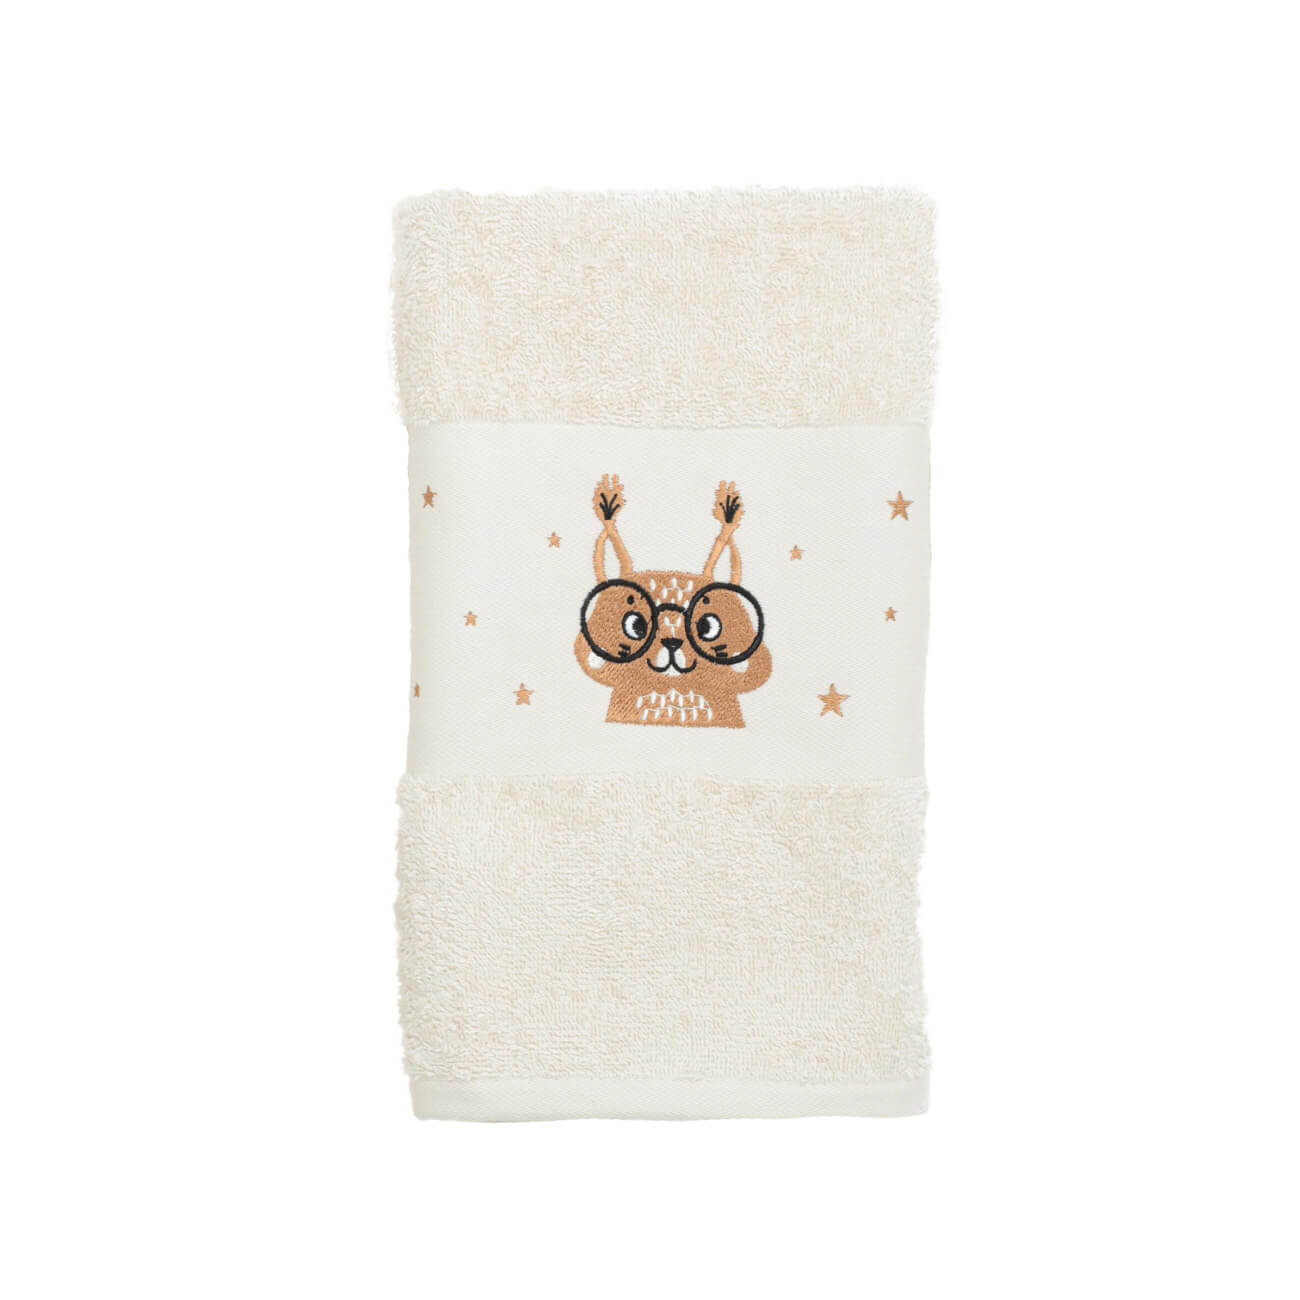 Children's towel, 50x90 cm, cotton, beige, Squirrel, Forest Animals изображение № 1